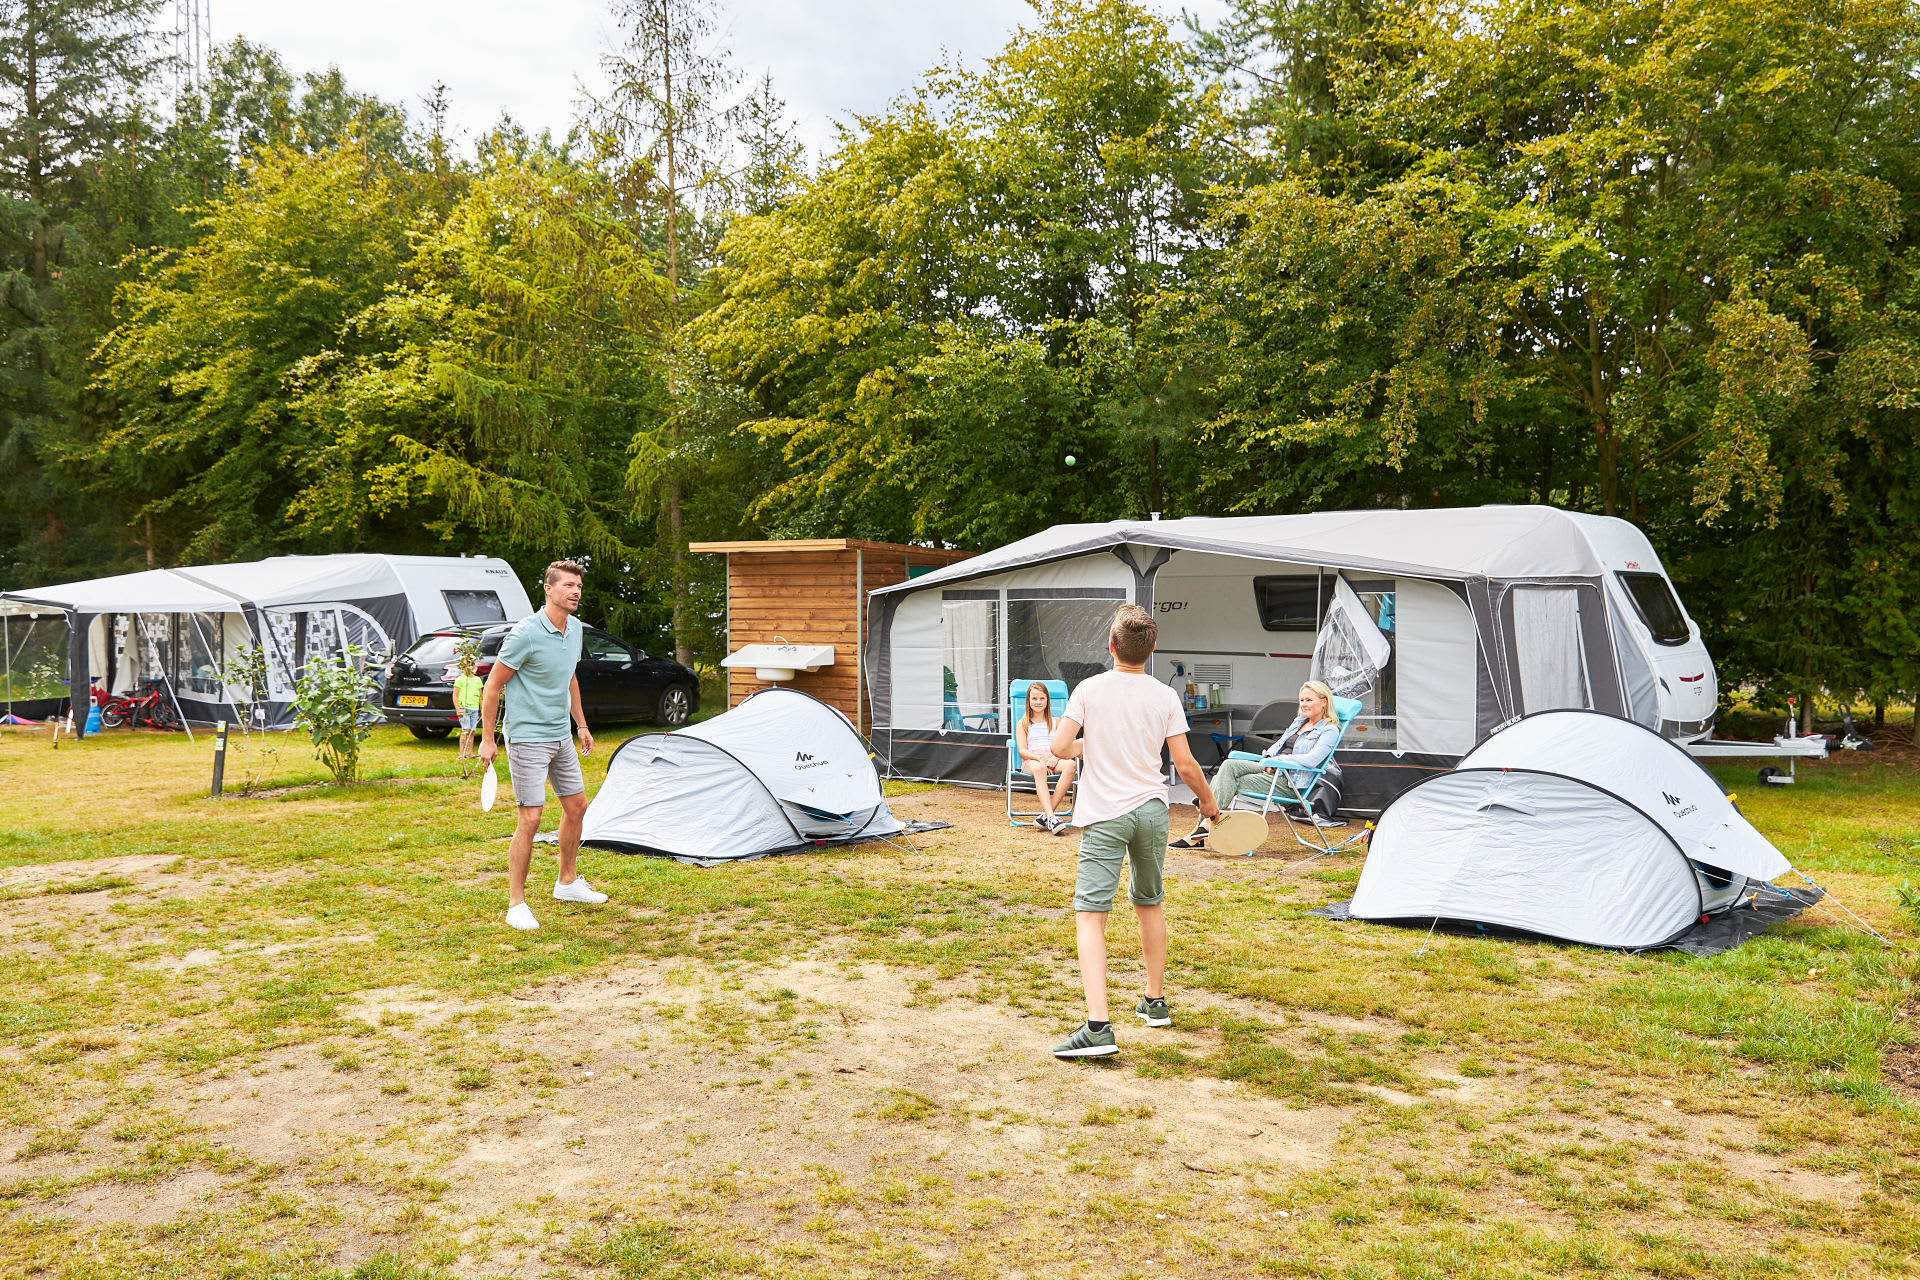 camping RCN de Jagerstee | Comfort kampeerplaats met prive sanitair